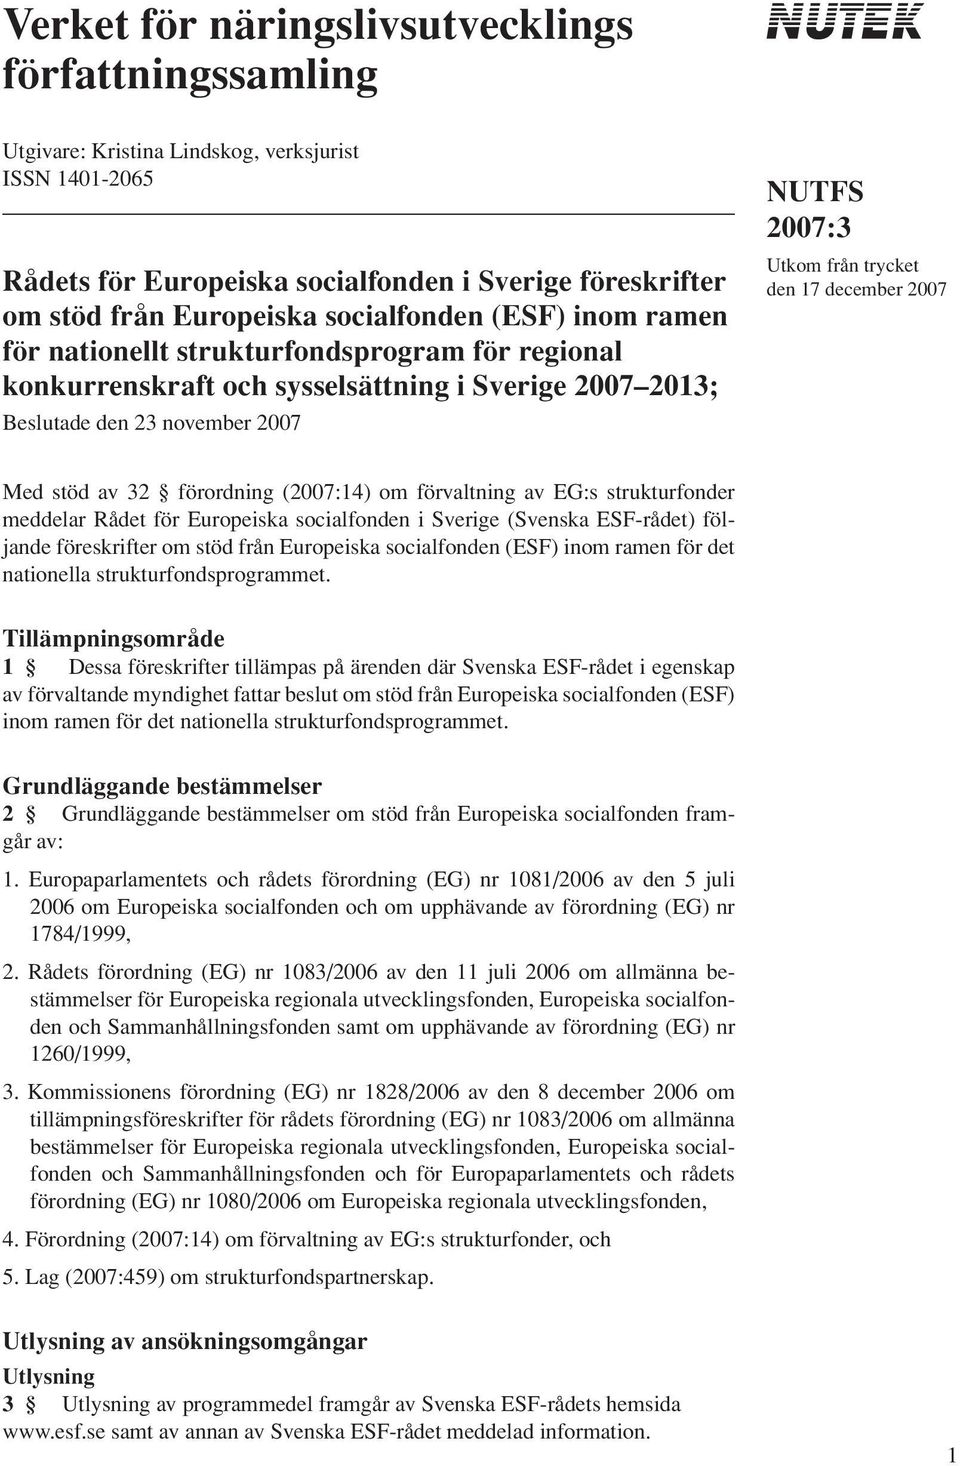 december 2007 Med stöd av 32 förordning (2007:14) om förvaltning av EG:s strukturfonder meddelar Rådet för Europeiska socialfonden i Sverige (Svenska ESF-rådet) följande föreskrifter om stöd från